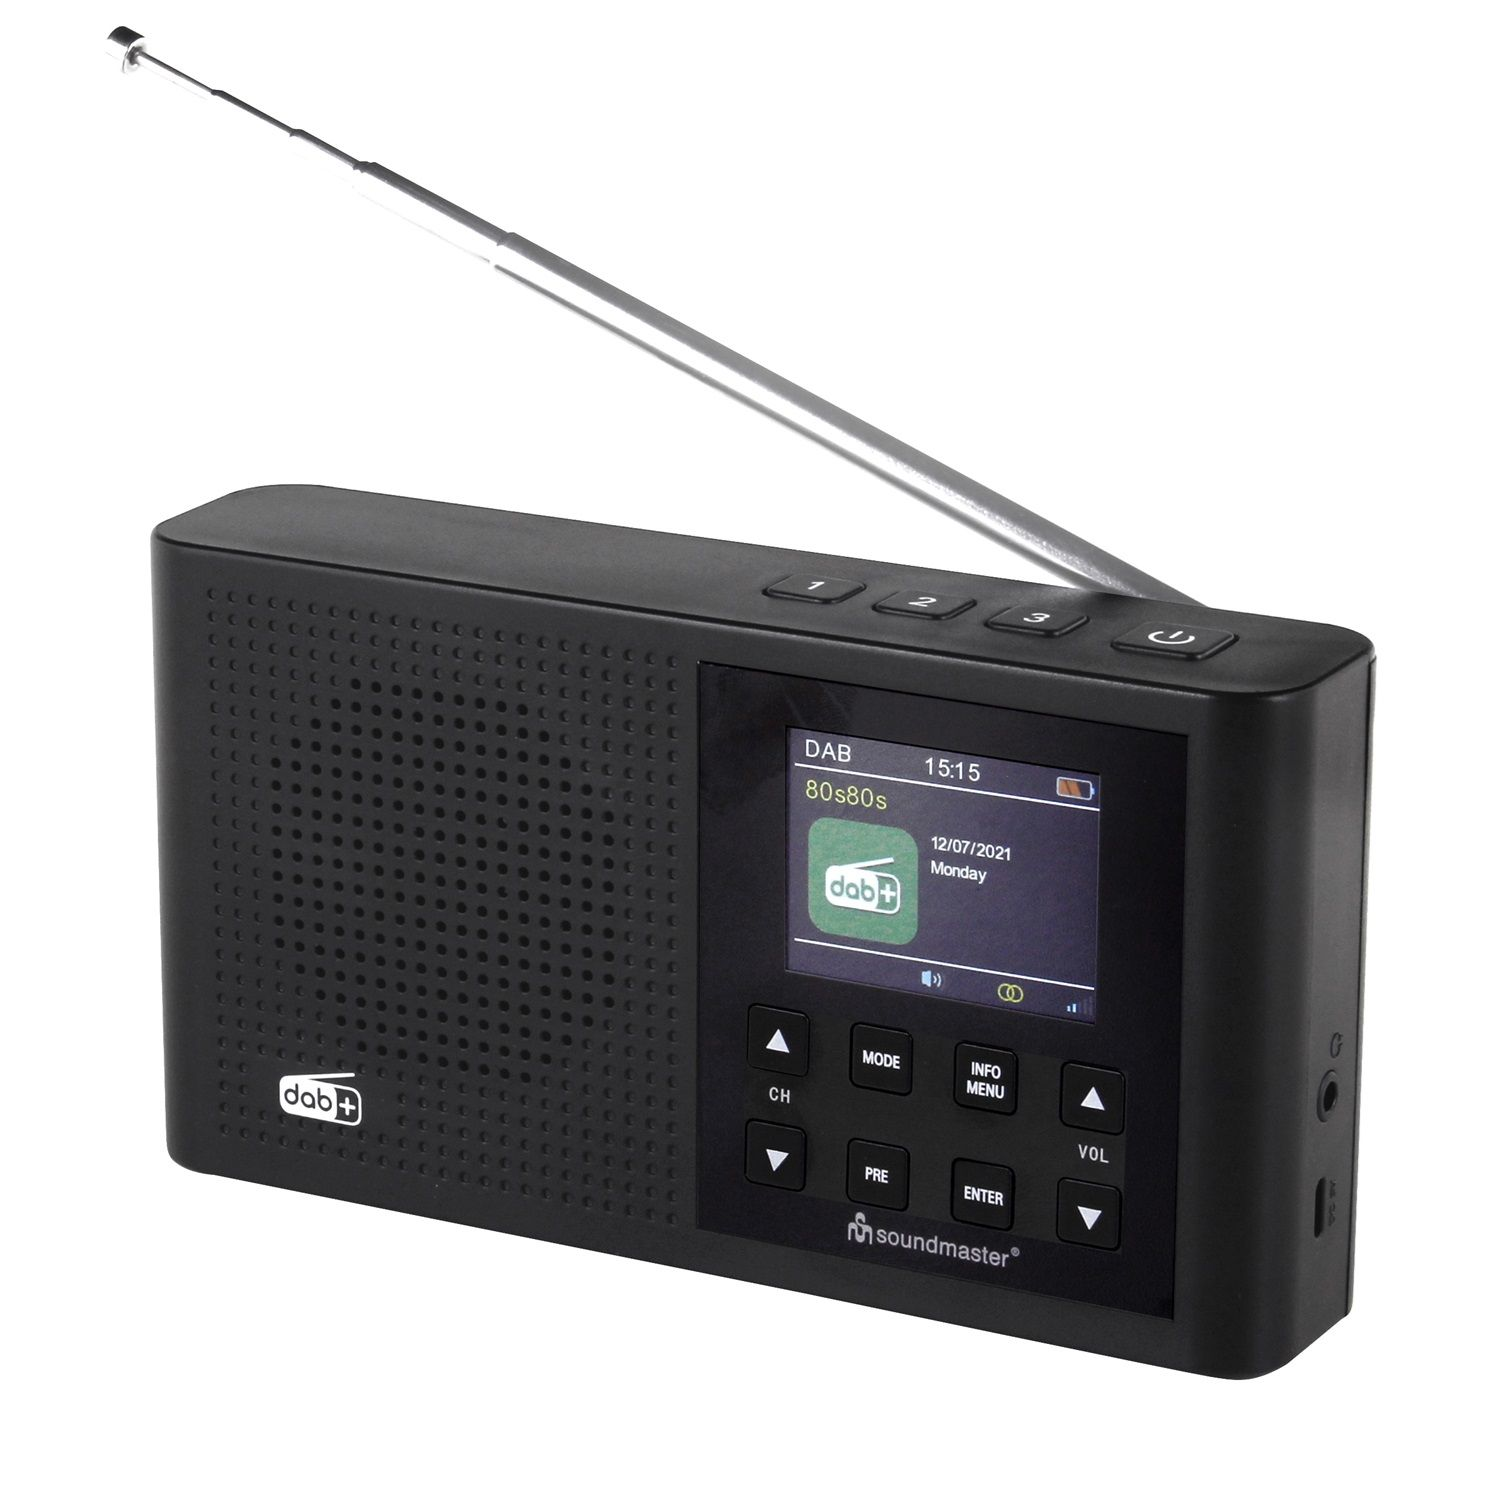 SOUNDMASTER Bluetooth, DAB+, FM, schwarz DAB165SW FM, DAB, AM, DAB+, Multifunktionsradio,